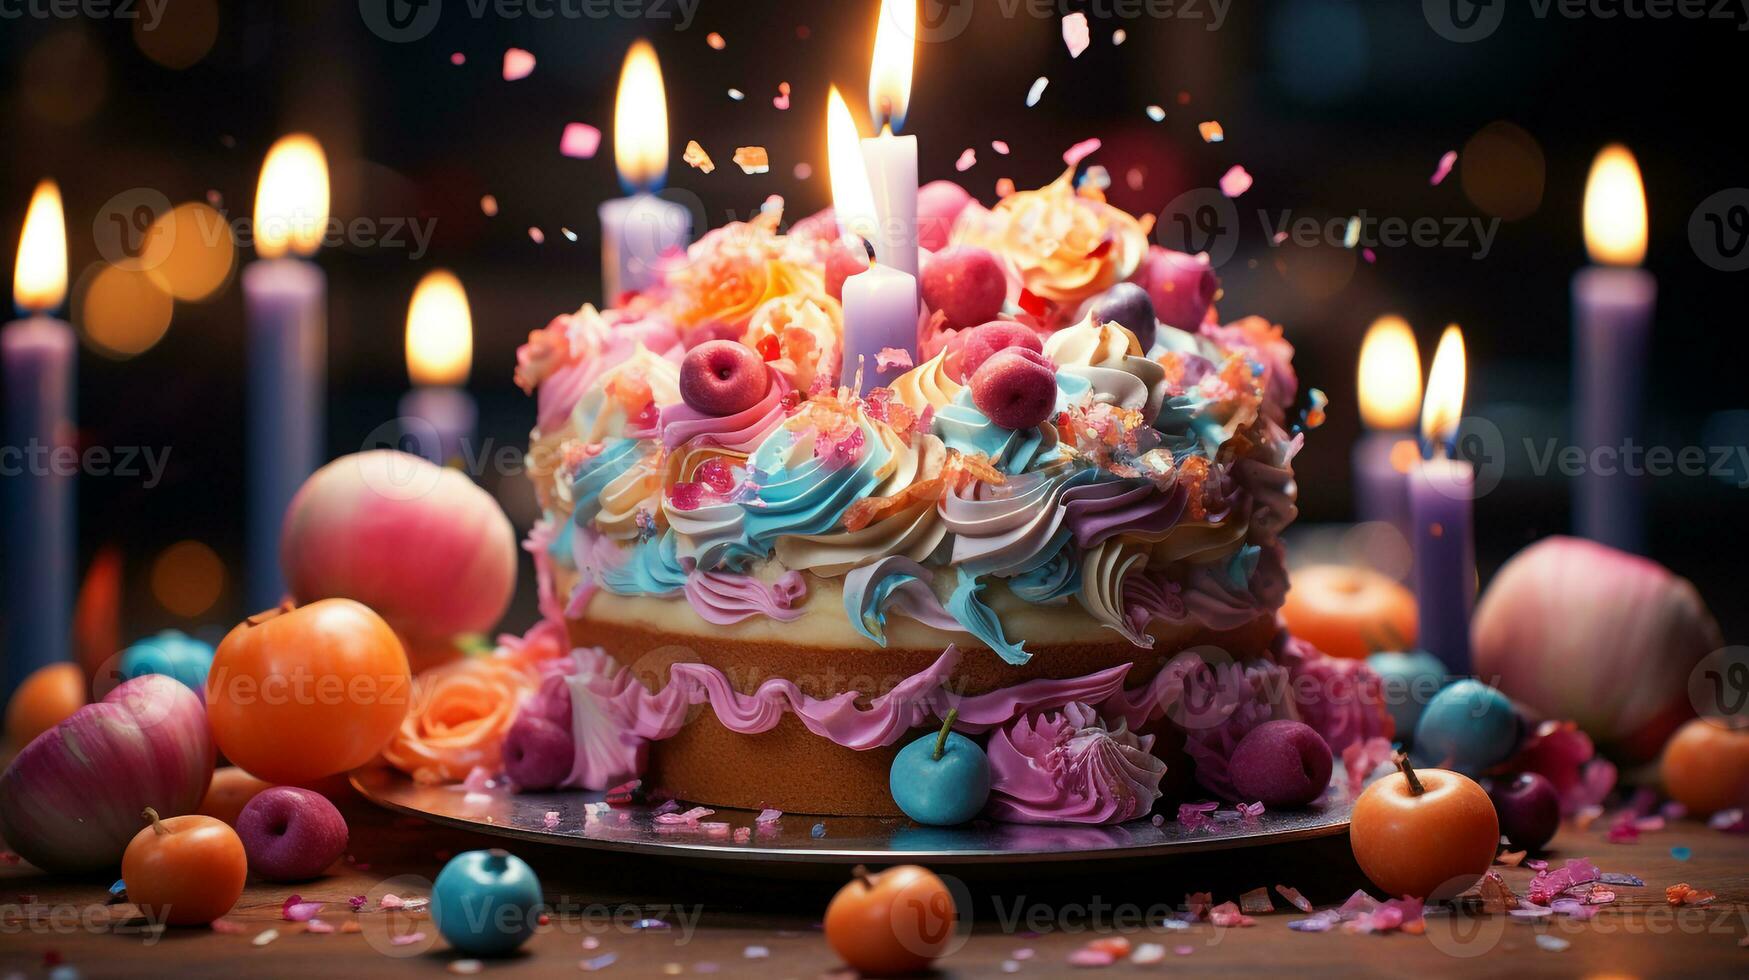 födelsedag kaka med massor av ljus foto